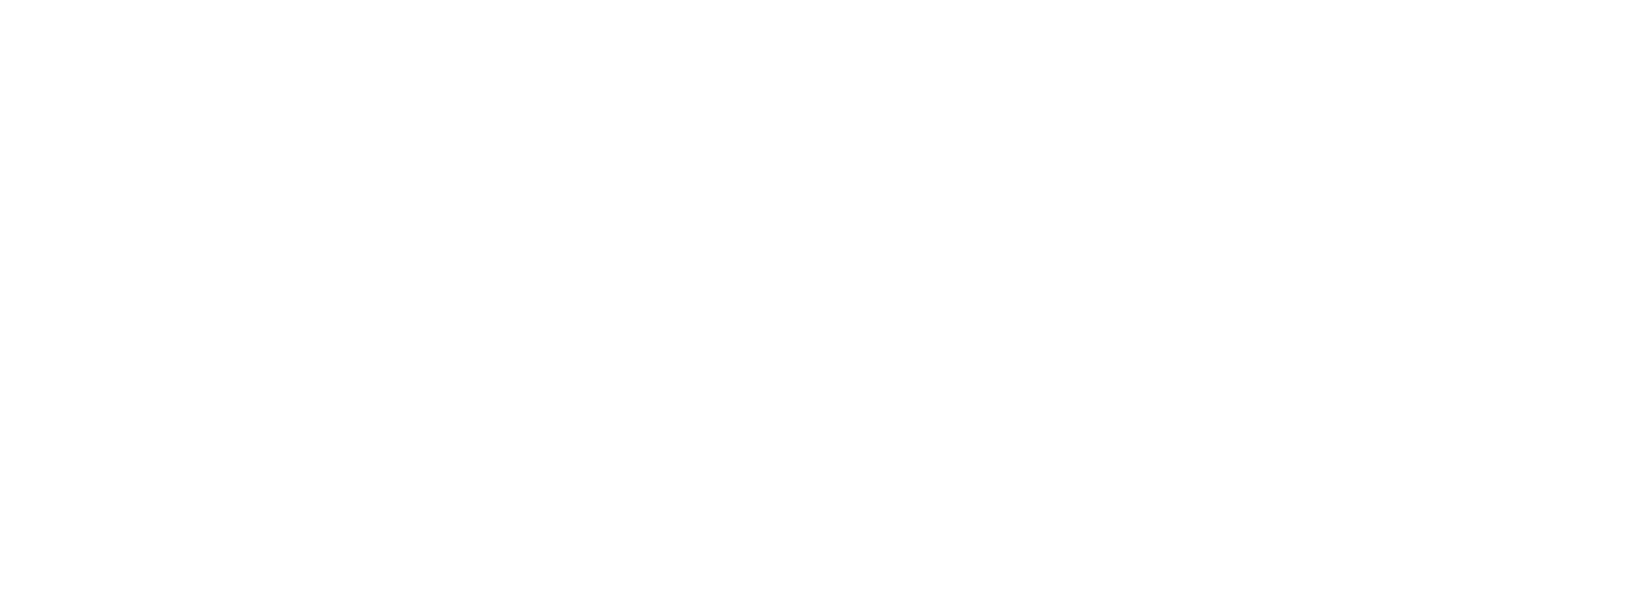 Prospective Media Ltd